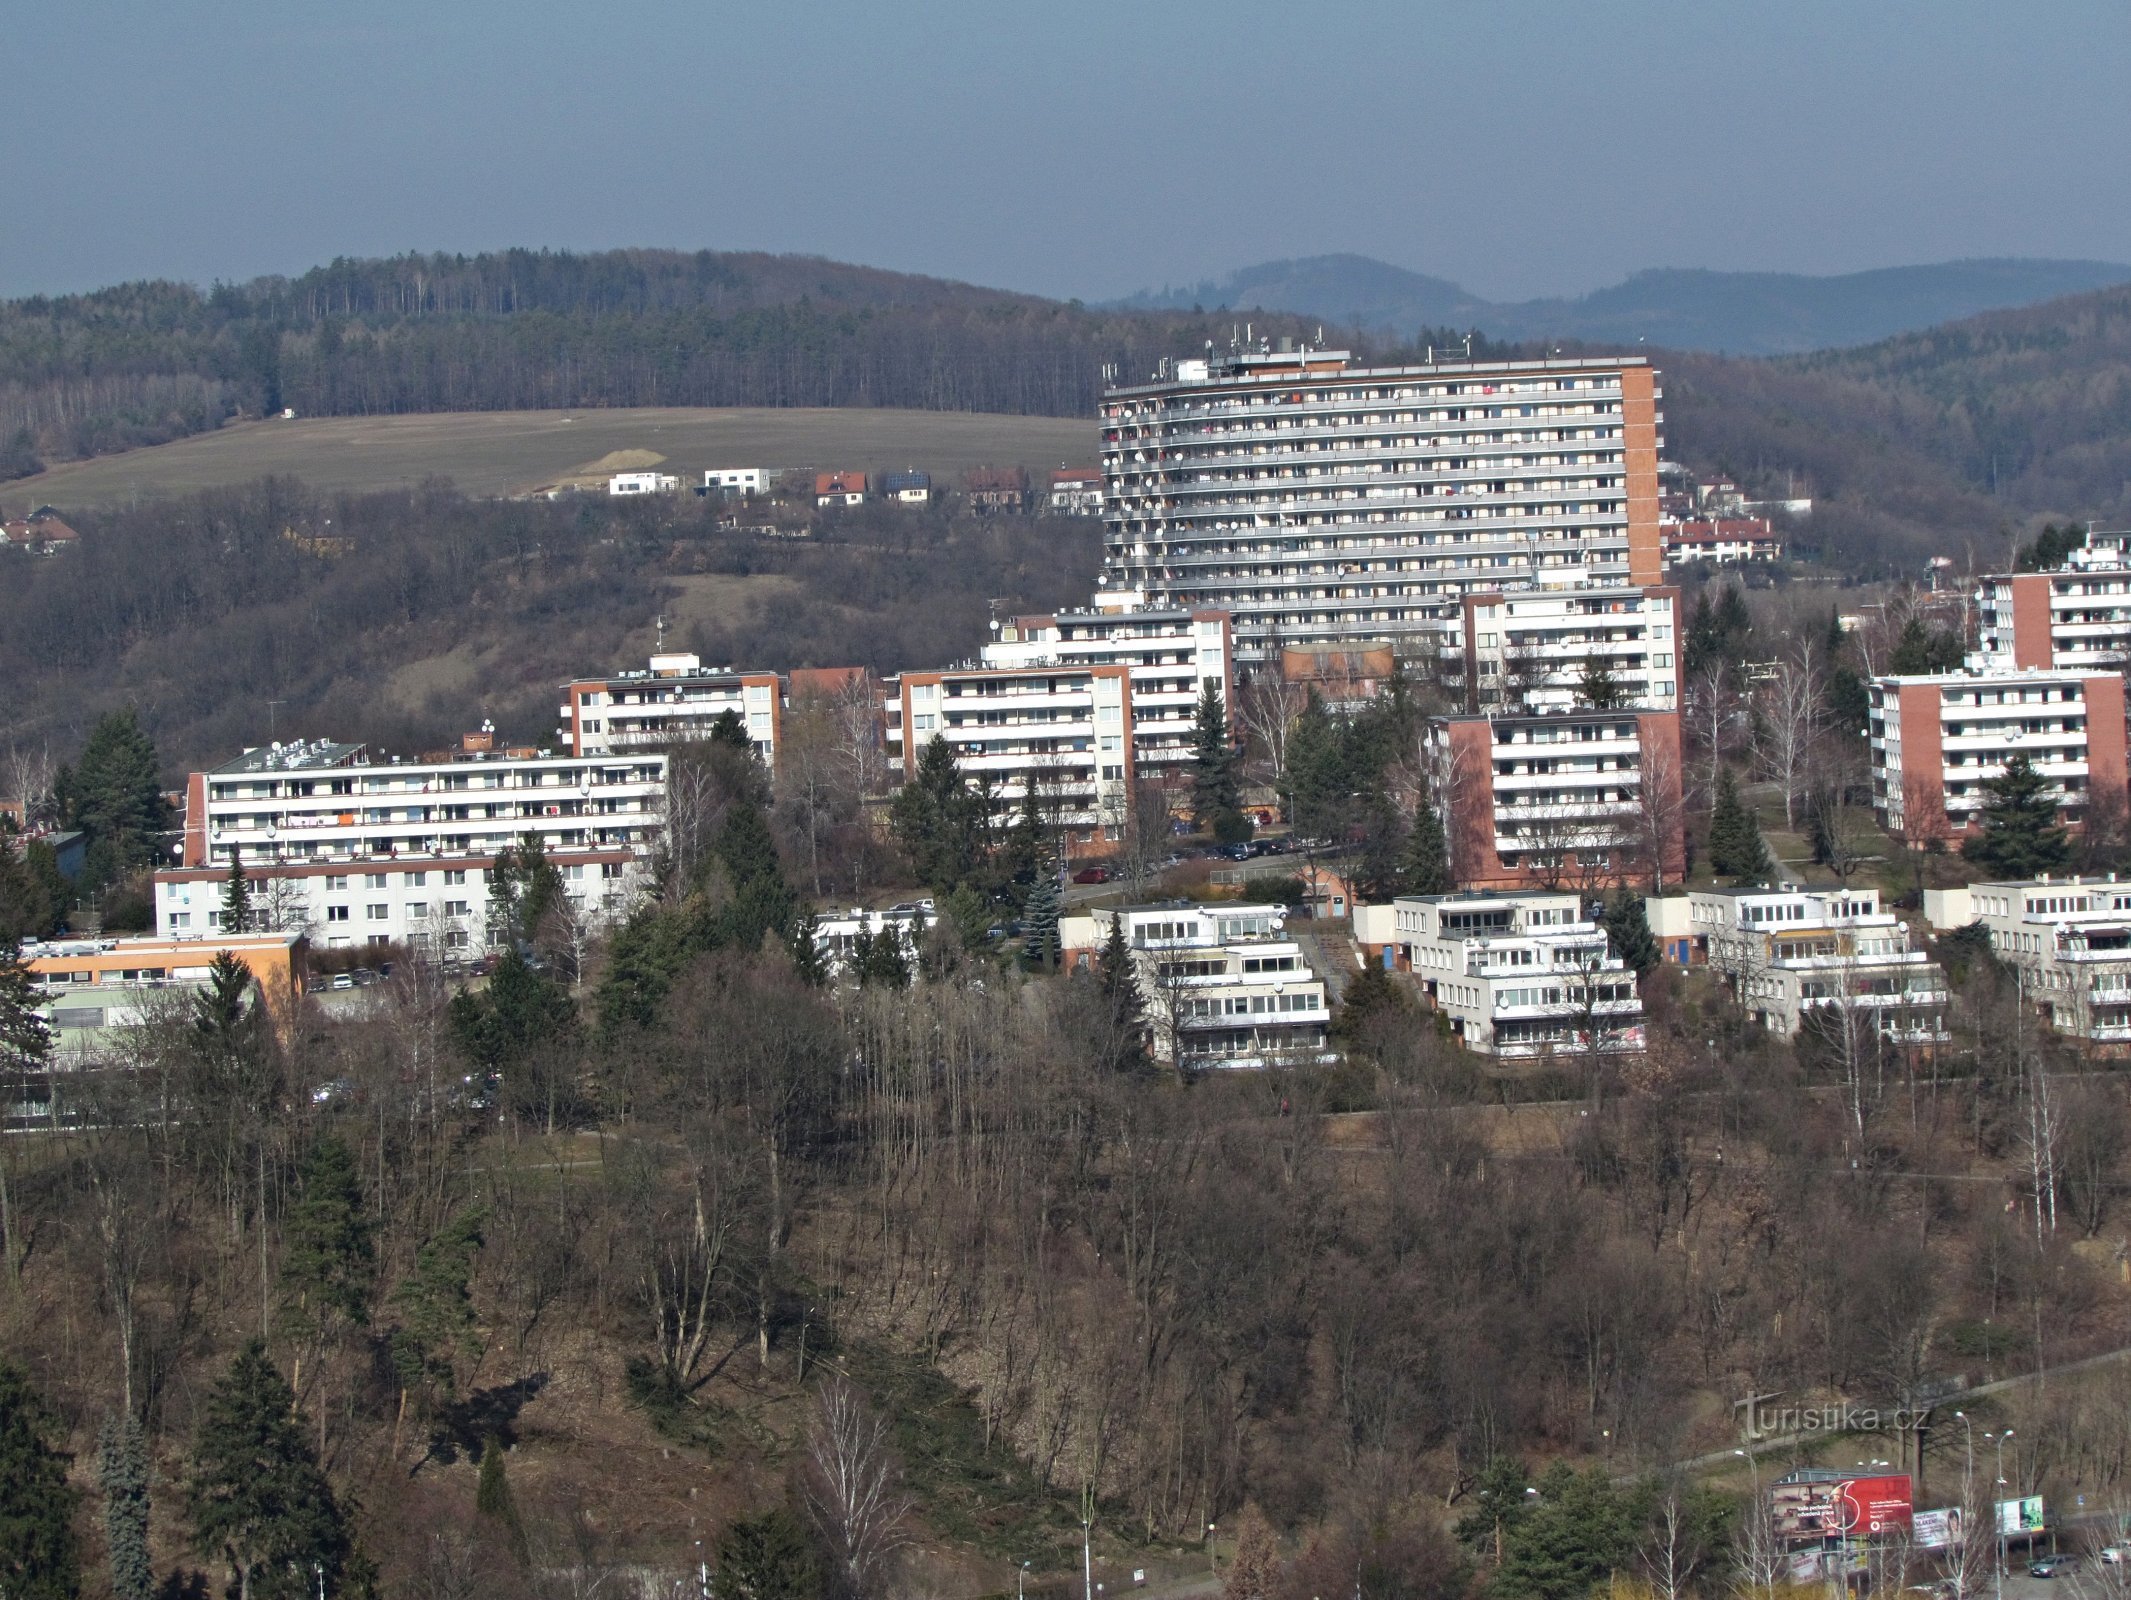 Una visita al grattacielo e via Barabáš a Zlín